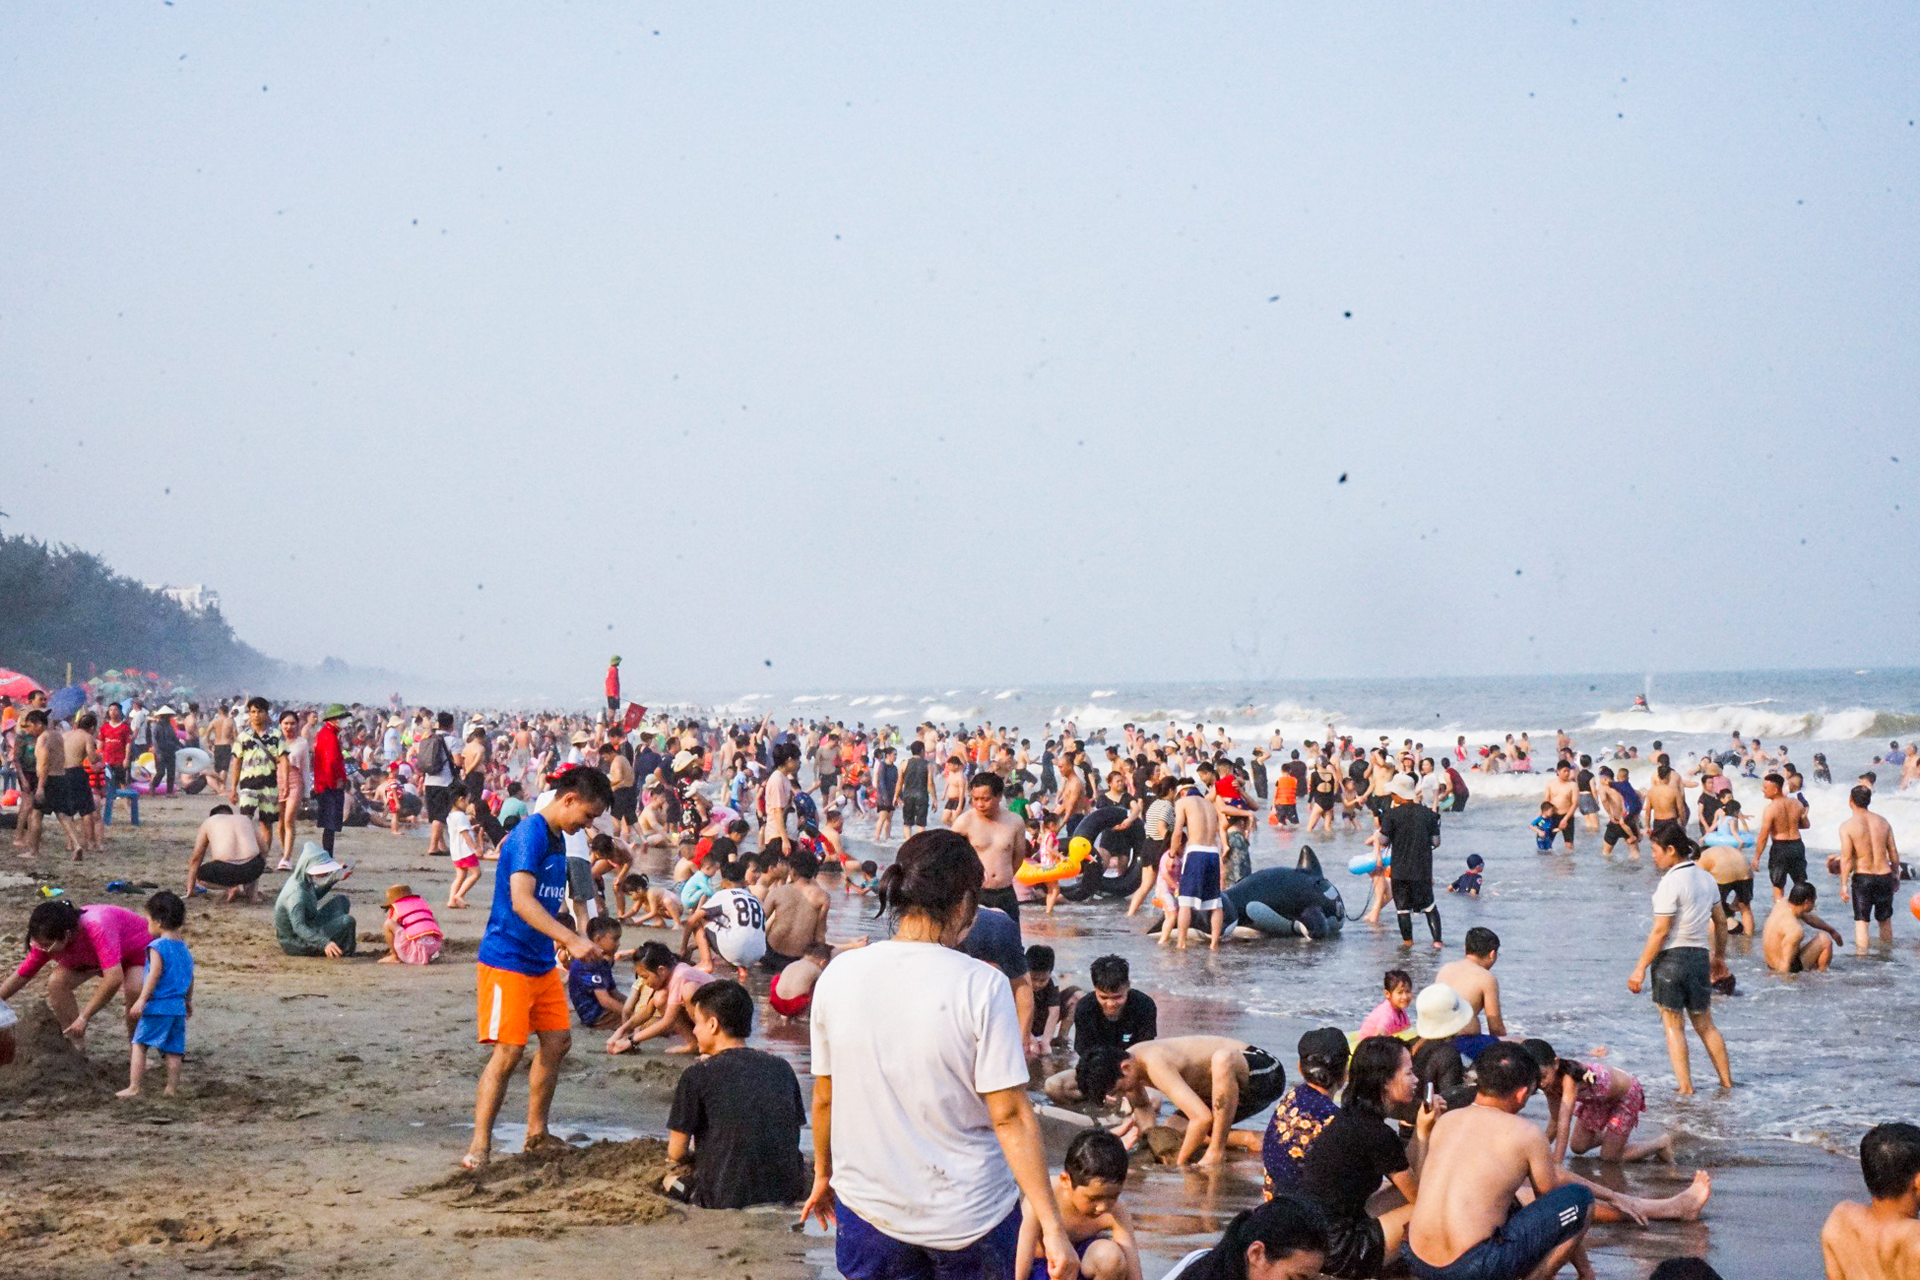 Vạn người đổ về bãi biển Sầm Sơn trong ngày nắng nóng đỉnh điểm - 3